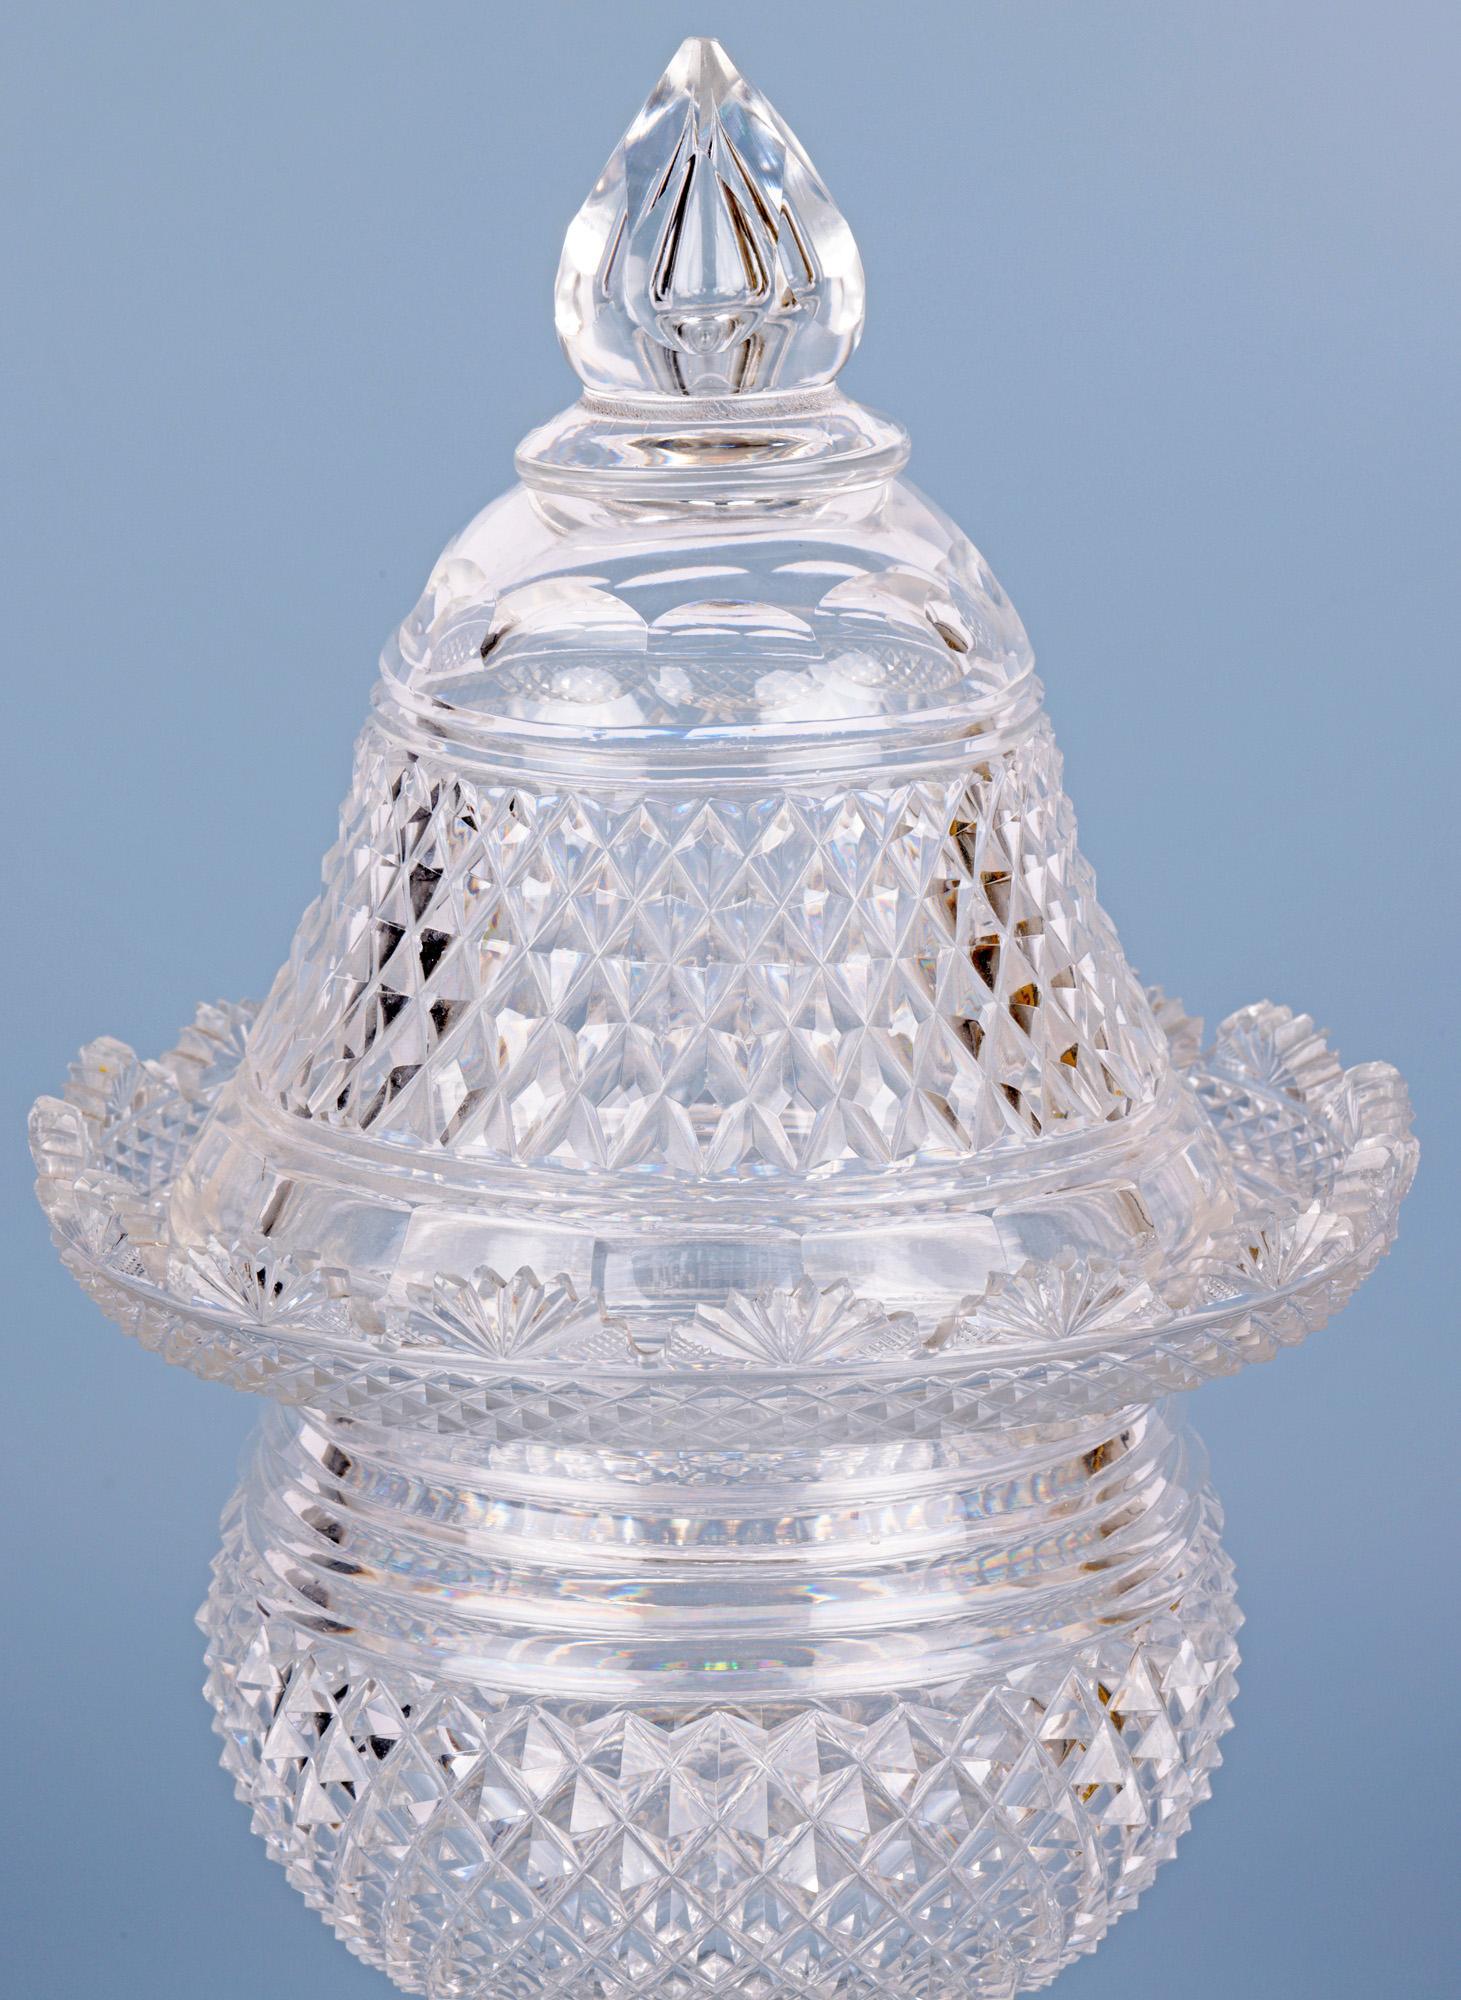 Une très belle jarre ancienne en verre taillé et son couvercle assorti datant d'environ 1825. La jarre repose sur un épais pied carré en forme d'étoile, une tige étroite en forme de tranche, un corps rond et bulbeux avec des motifs en forme de